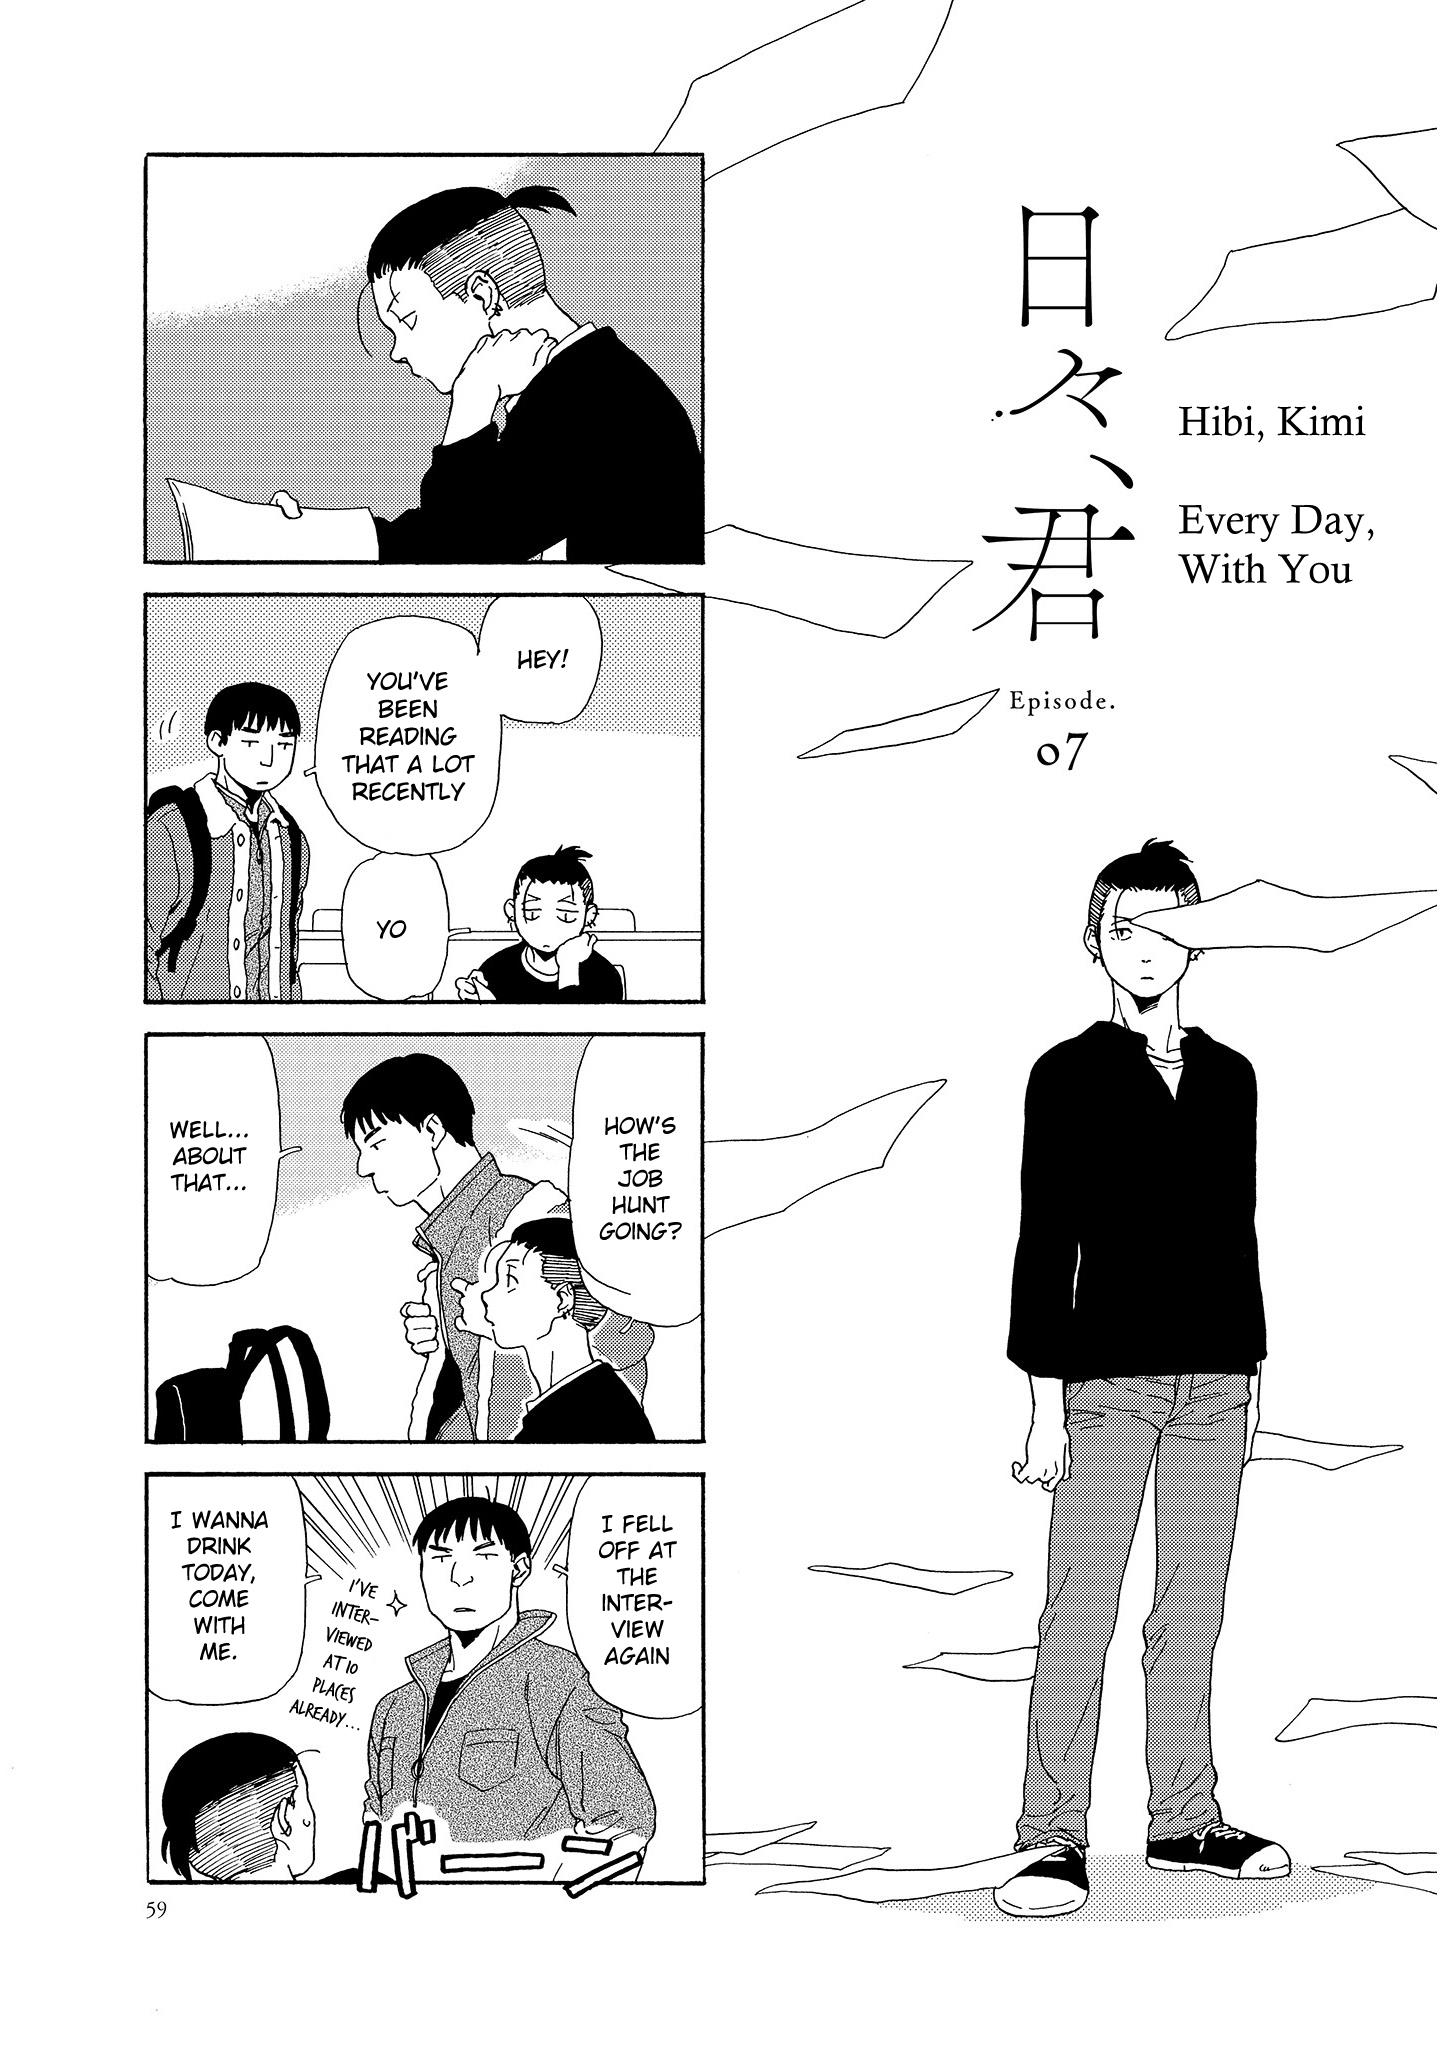 Hibi, Kimi Vol.1 Chapter 7 - Picture 1